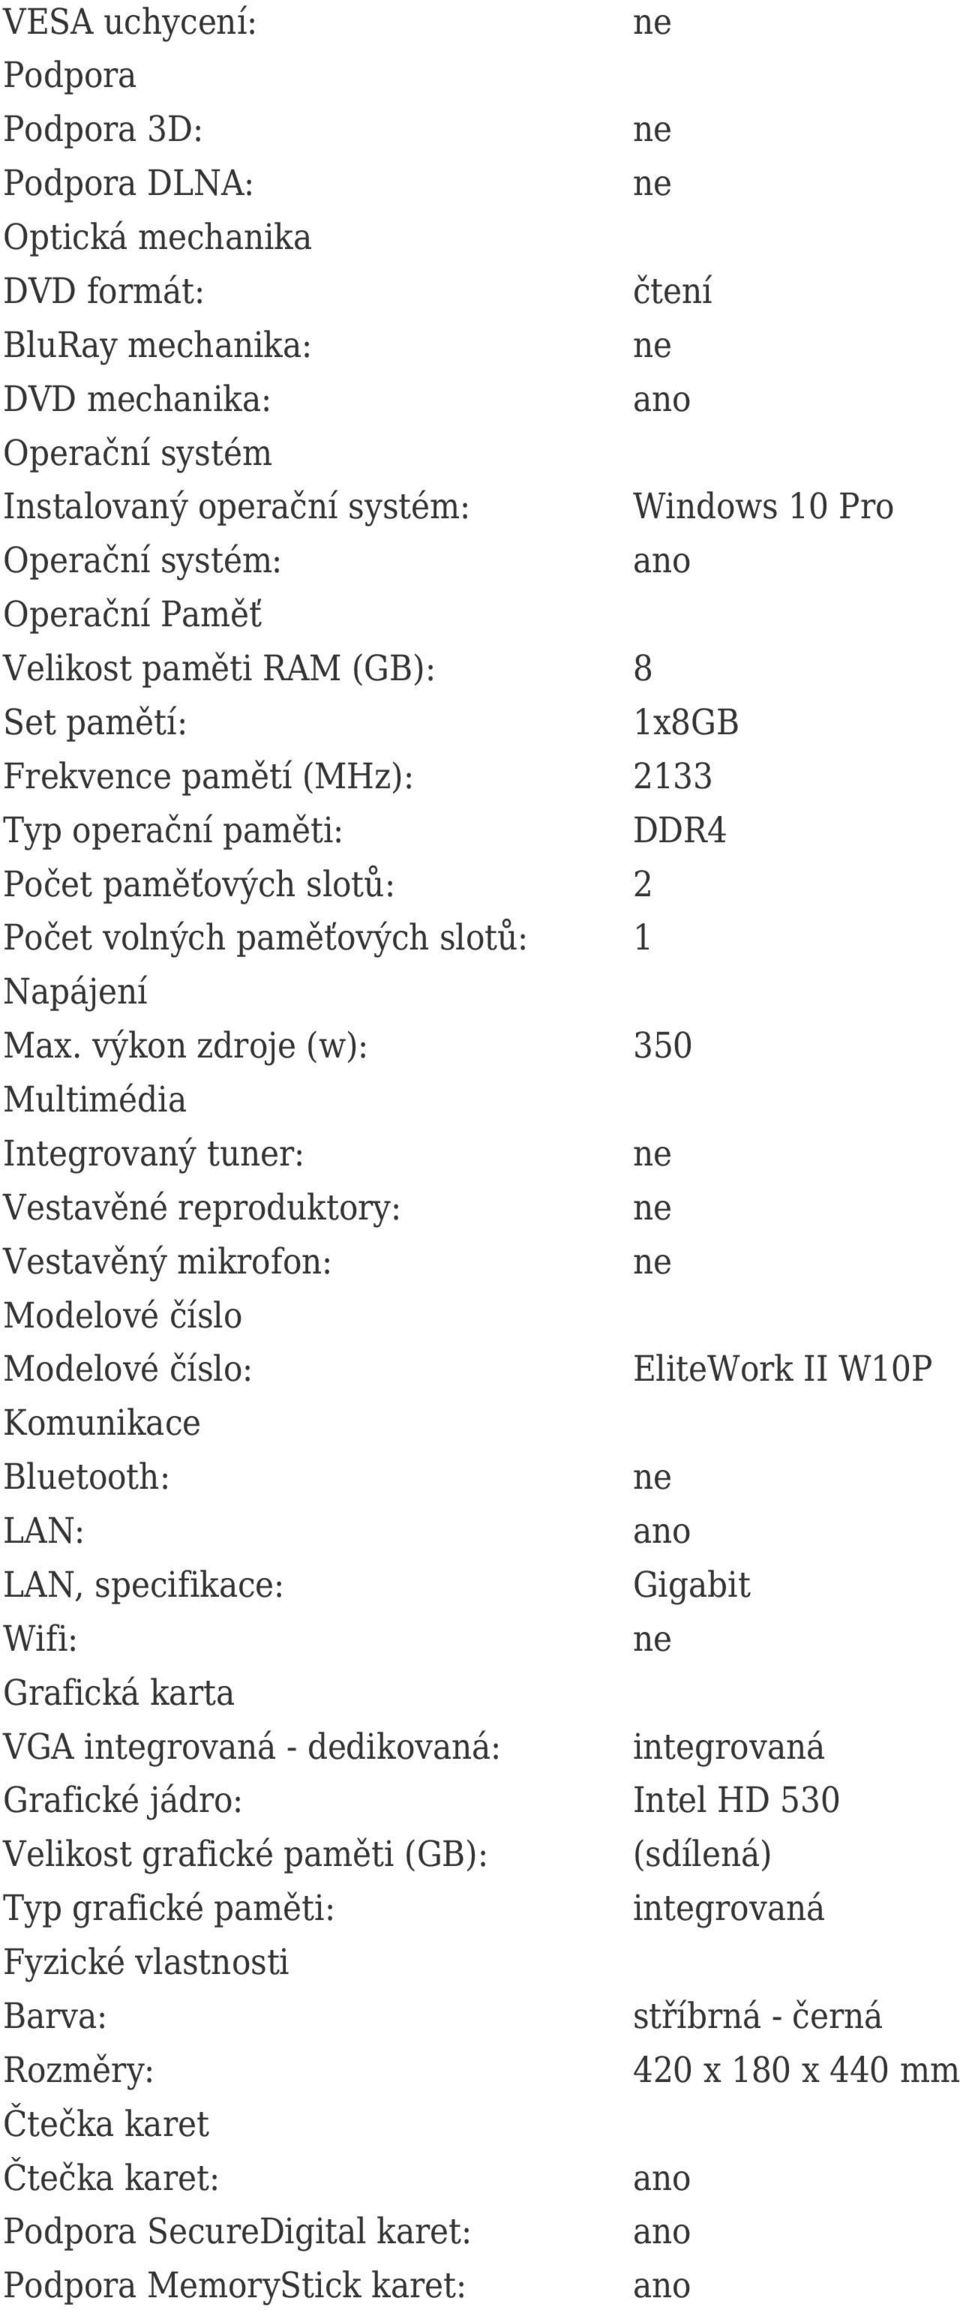 výkon zdroje (w): 350 Multimédia Integrovaný tur: Vestavěné reproduktory: Vestavěný mikrofon: Modelové číslo Modelové číslo: EliteWork II W10P Komunikace Bluetooth: LAN: LAN, specifikace: Gigabit